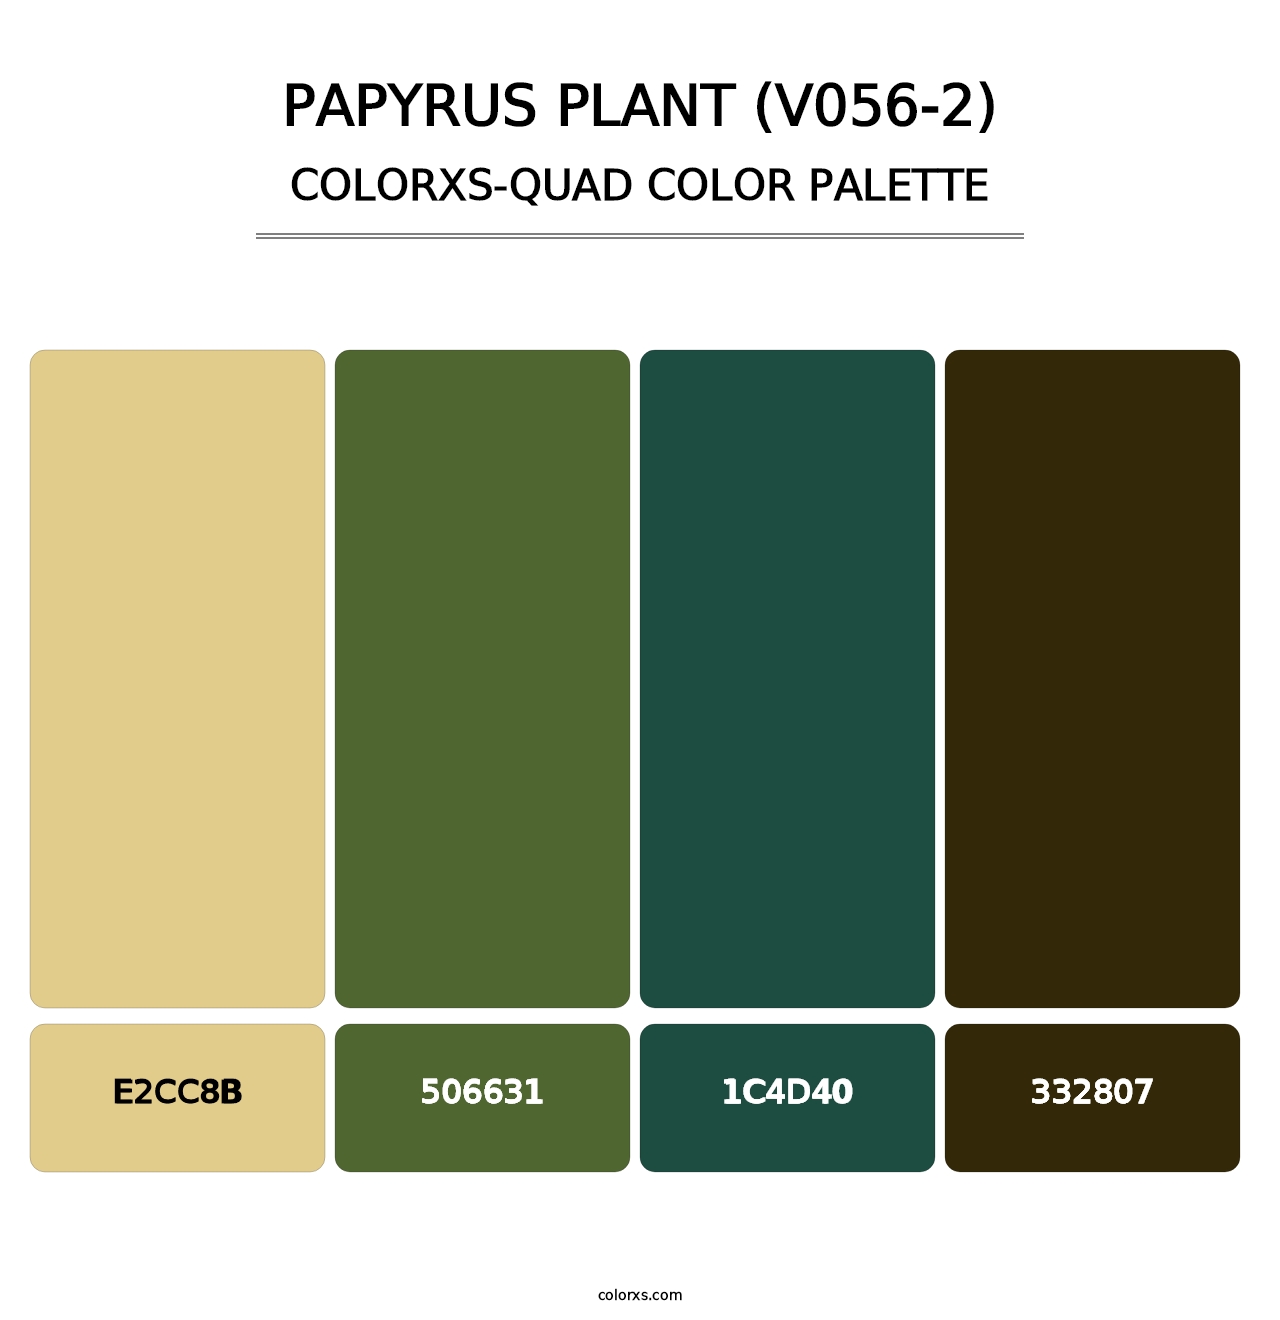 Papyrus Plant (V056-2) - Colorxs Quad Palette